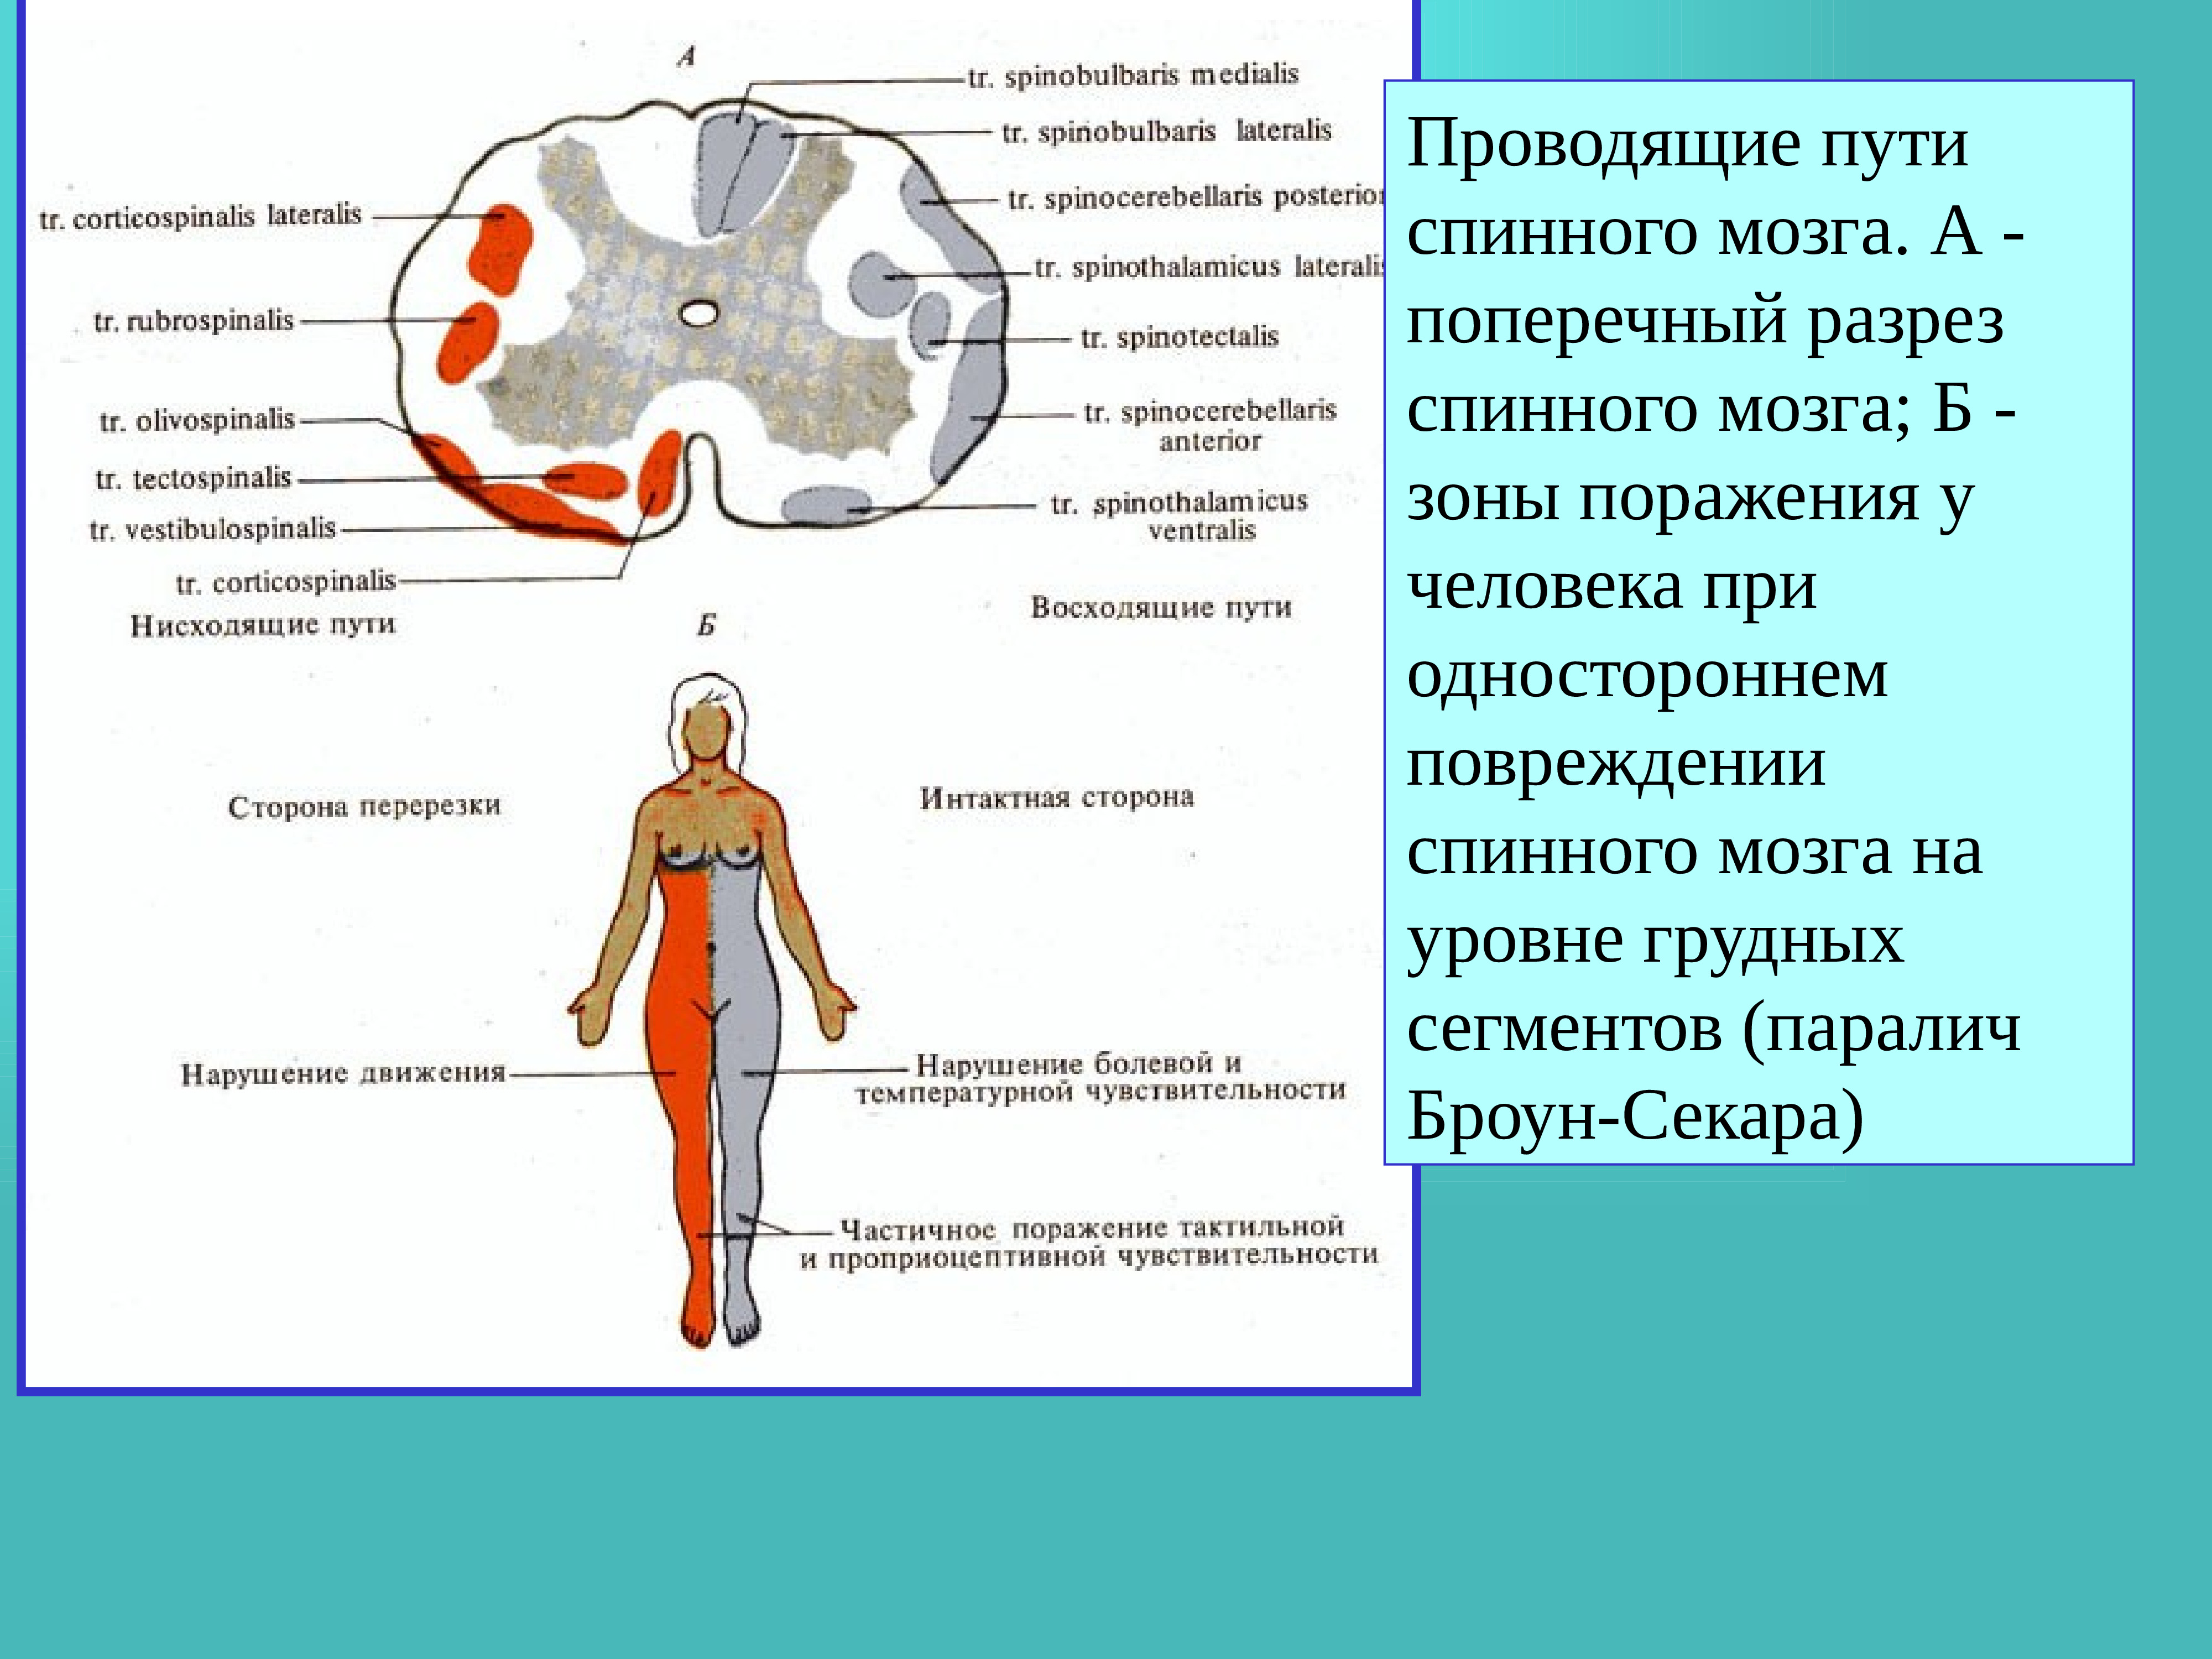 Примеры рефлекторных актов при участии спинного мозга. Рефлекторная функция спинного мозга. Рефлекторные акты человека при участии спинного мозга. Рефлекторная и Проводящая функции спинного мозга. Рефлекторная дуга спинного мозга.